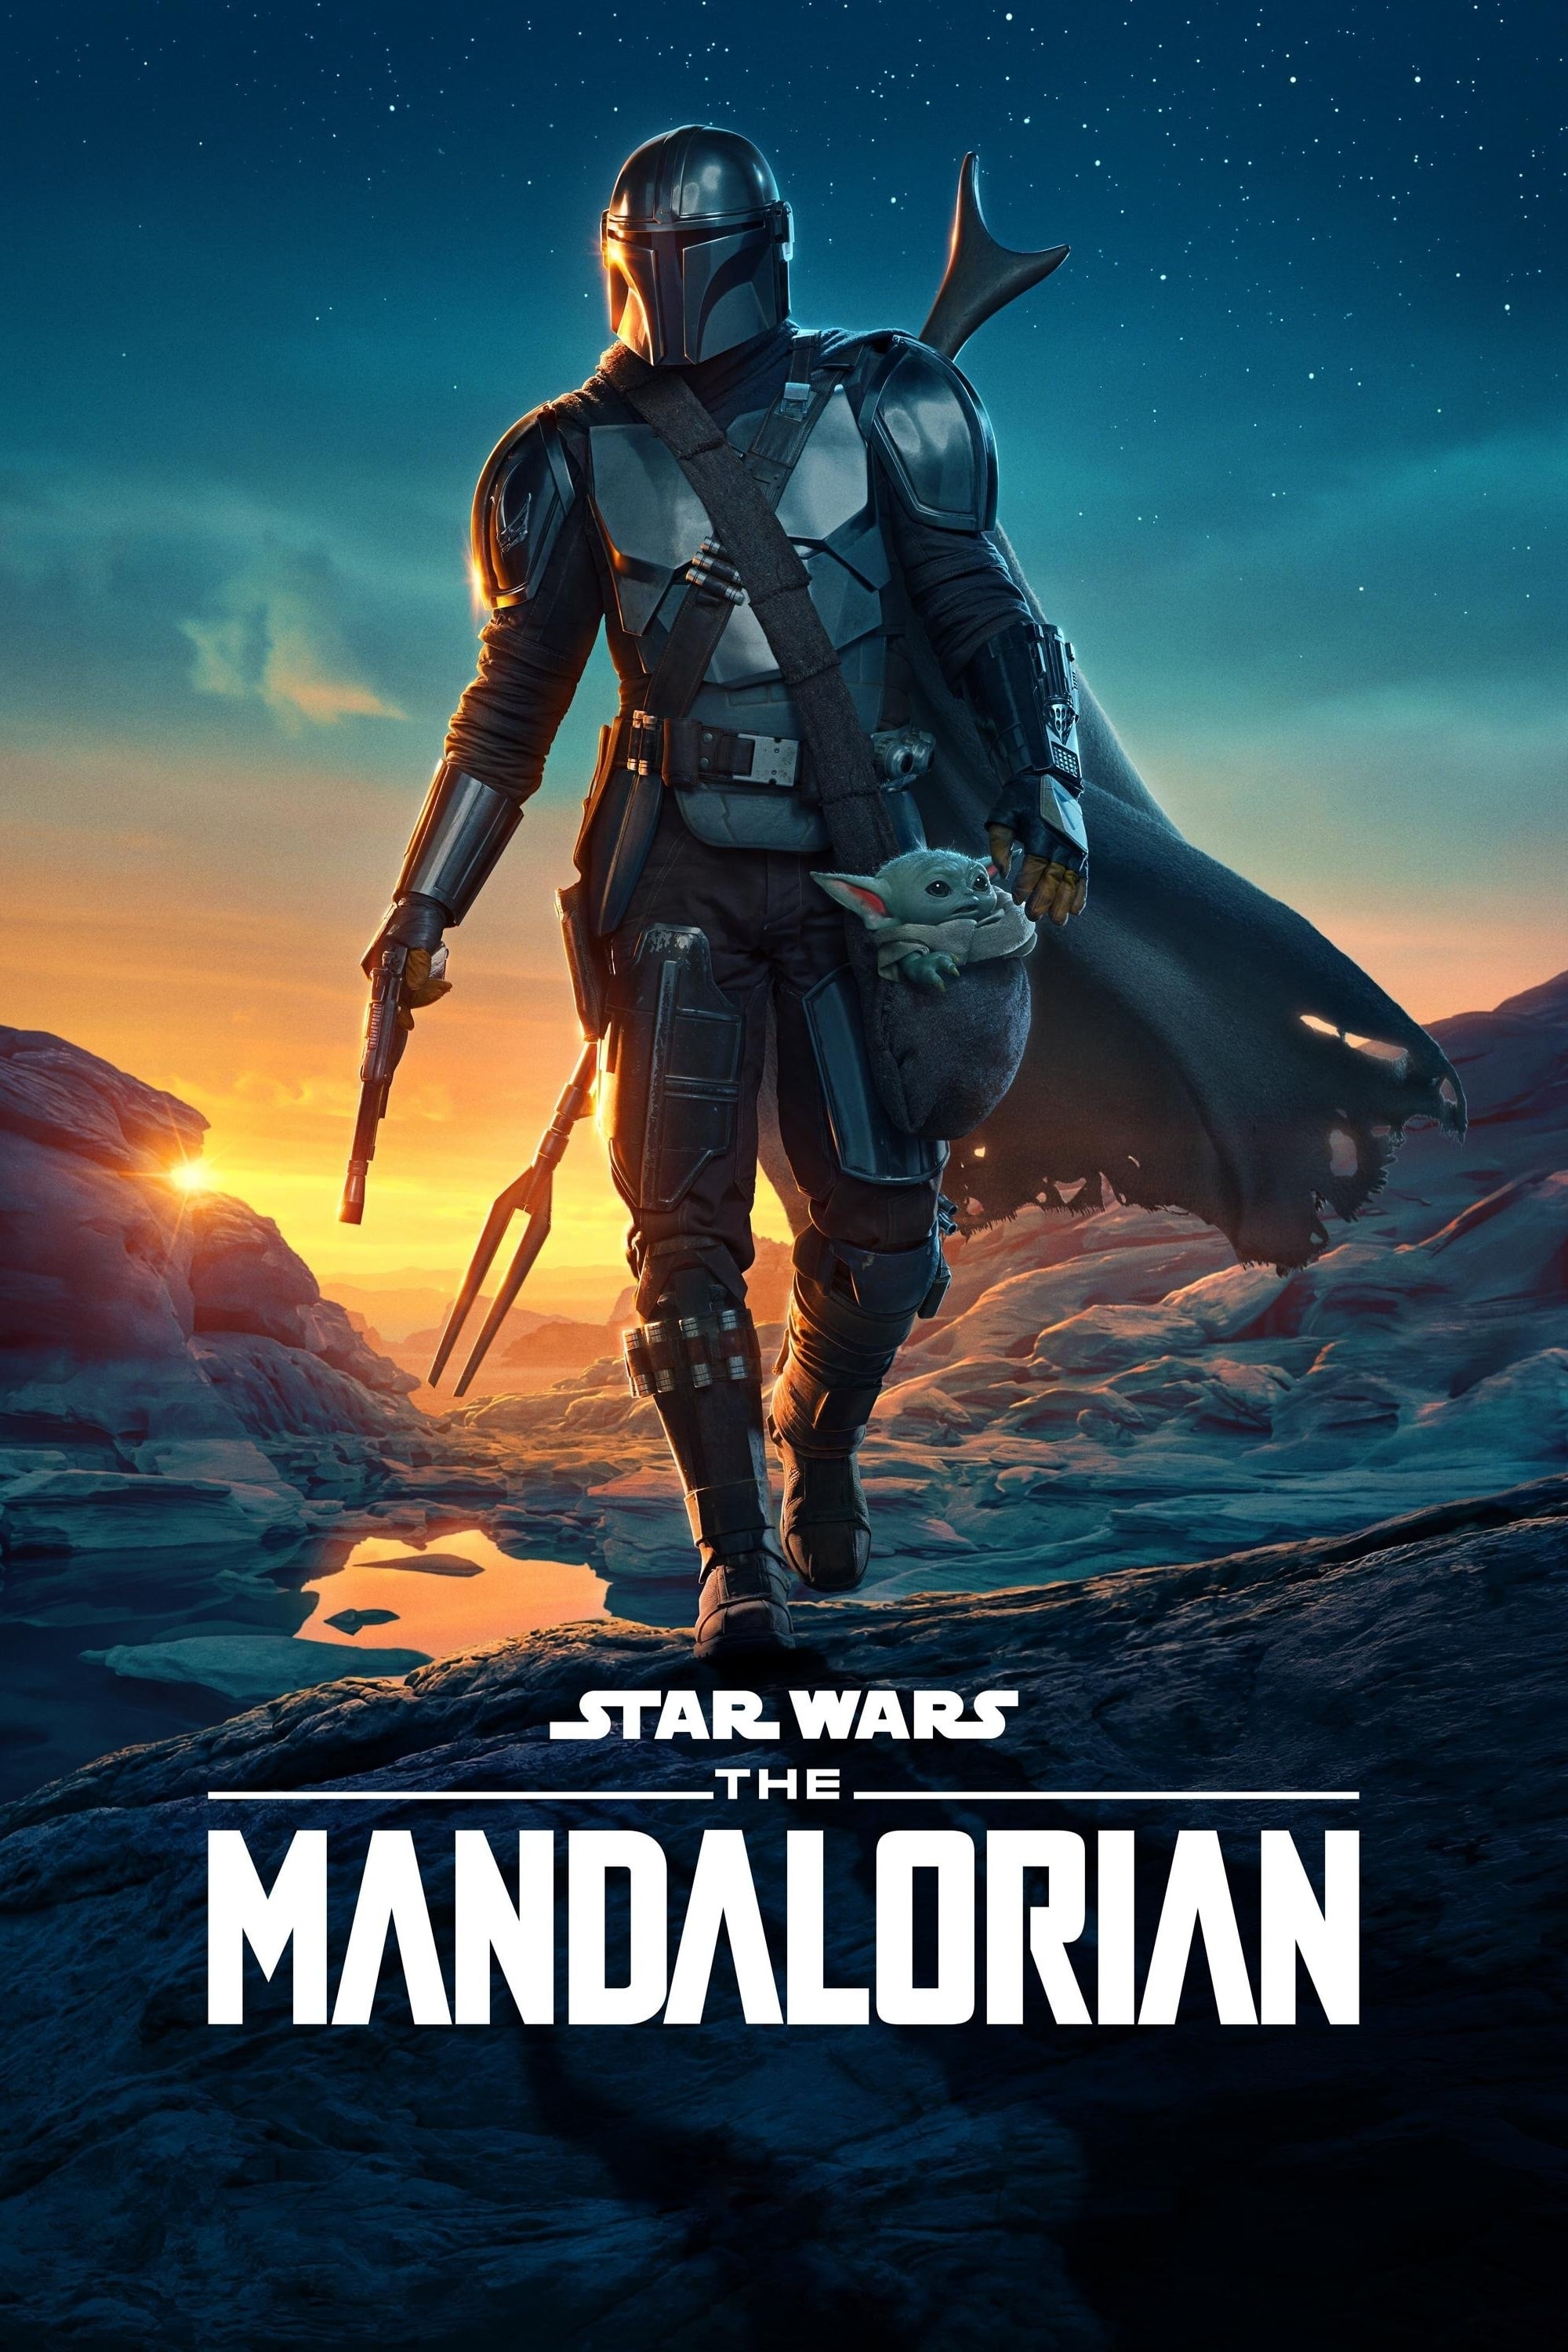 O Mandaloriano: Star Wars (The Mandalorian)